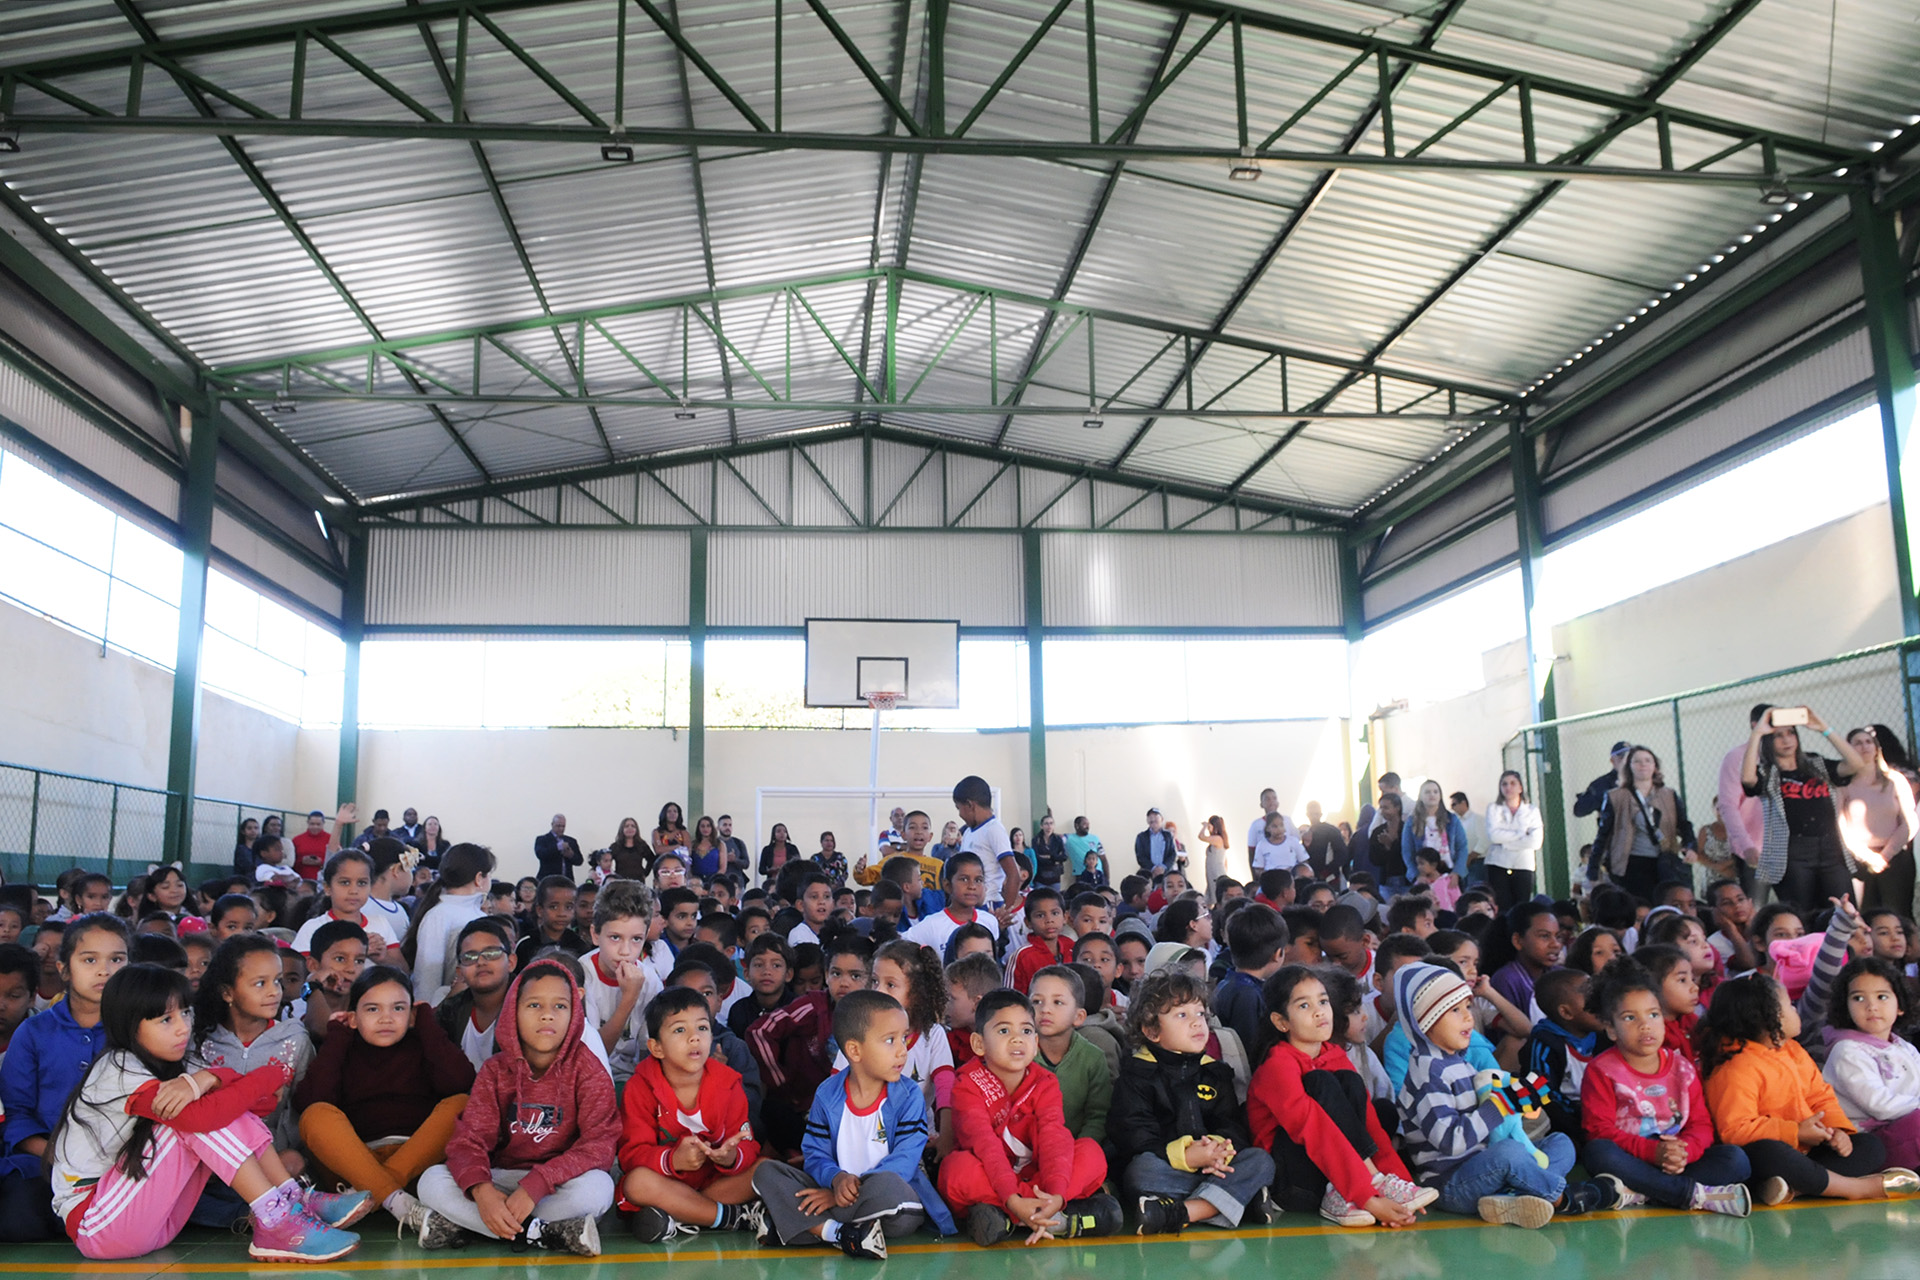 Os pouco mais de mil alunos da Escola Classe 38 de Ceilândia receberam uma quadra poliesportiva na manhã desta terça-feira (22). O local tem piso laminado e cobertura, além de cestas e traves.